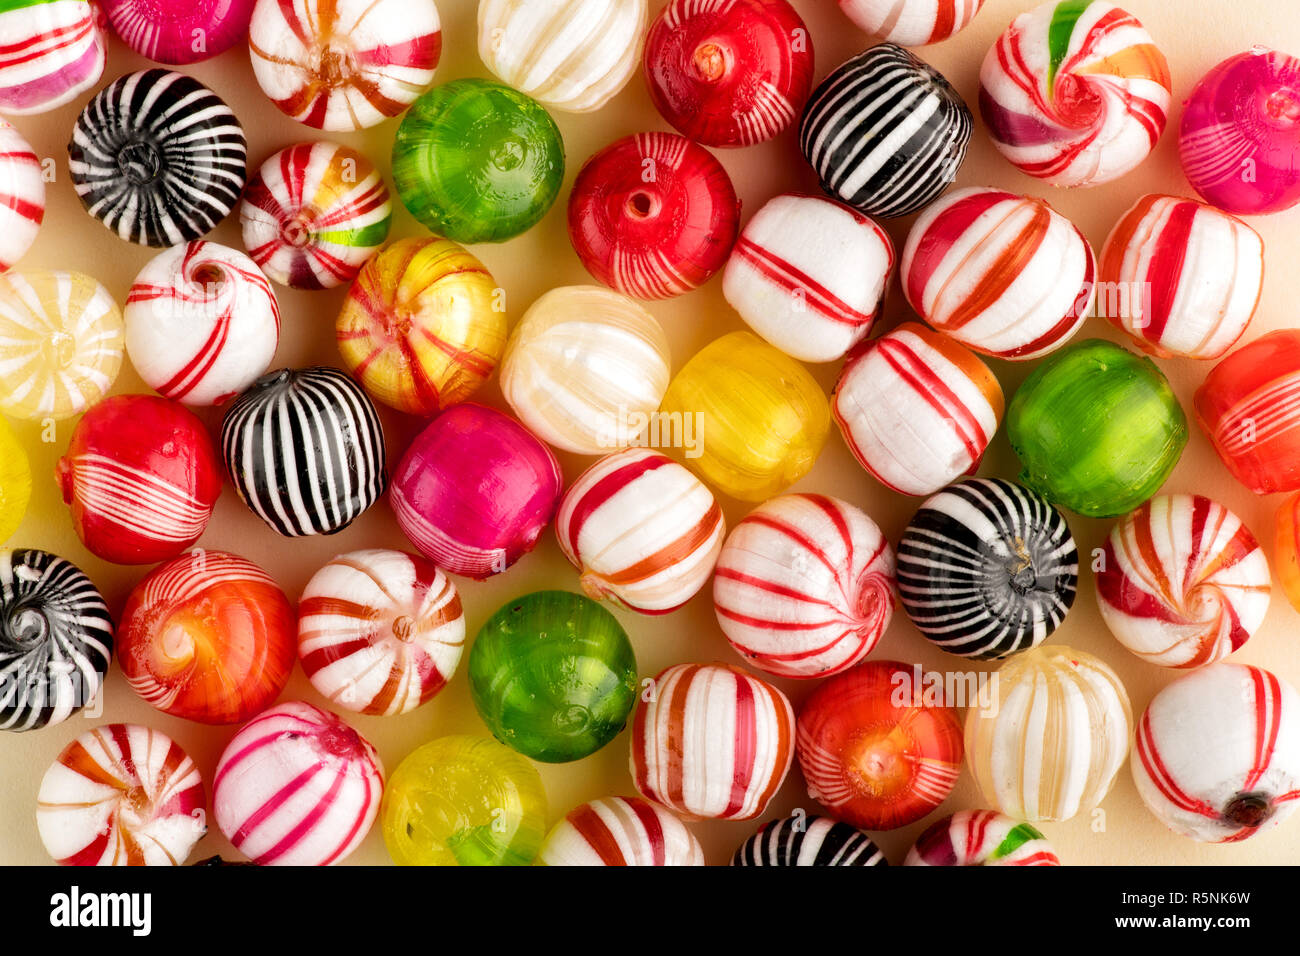 Bunte runde Bonbons von Rot, Weiß, Grün, Gelb und Schwarz mit Streifen, sitzen auf der Oberfläche in einer Schicht, Ansicht von oben in Full Frame Stockfoto